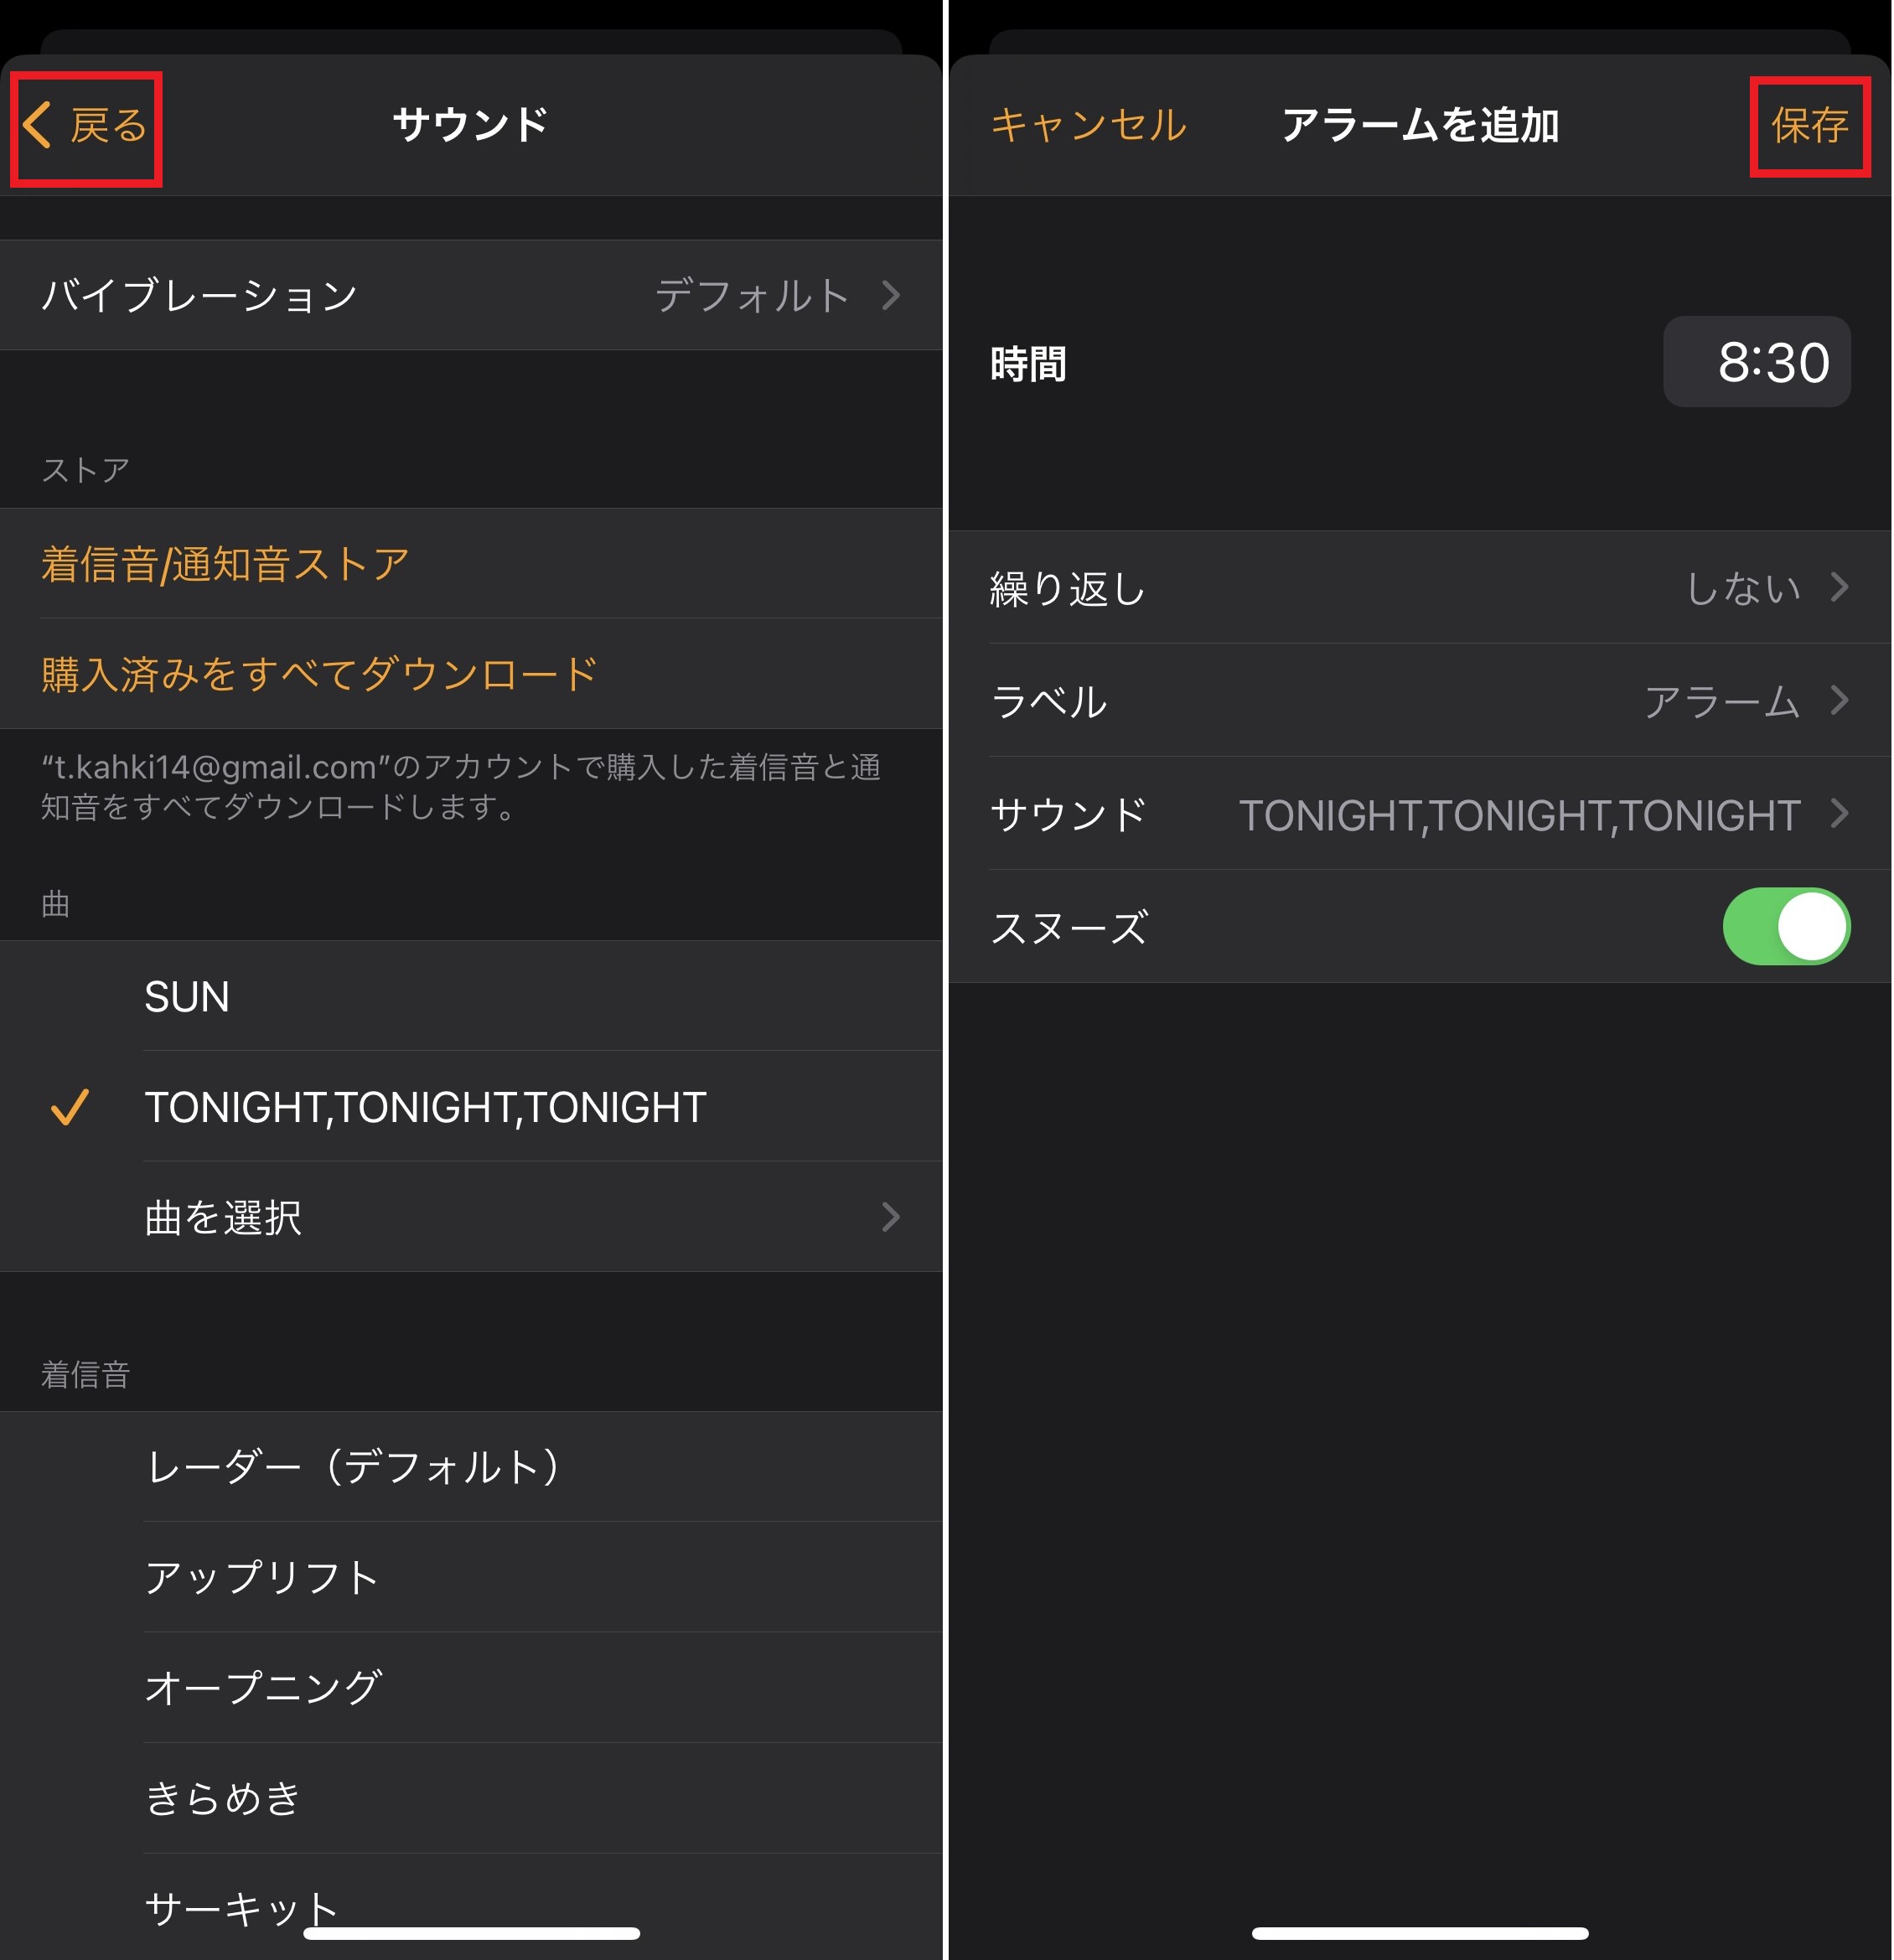 好きな曲なら目覚めもスッキリ Apple Musicの曲をアラームに設定する方法 Iphone Tips Engadget 日本版